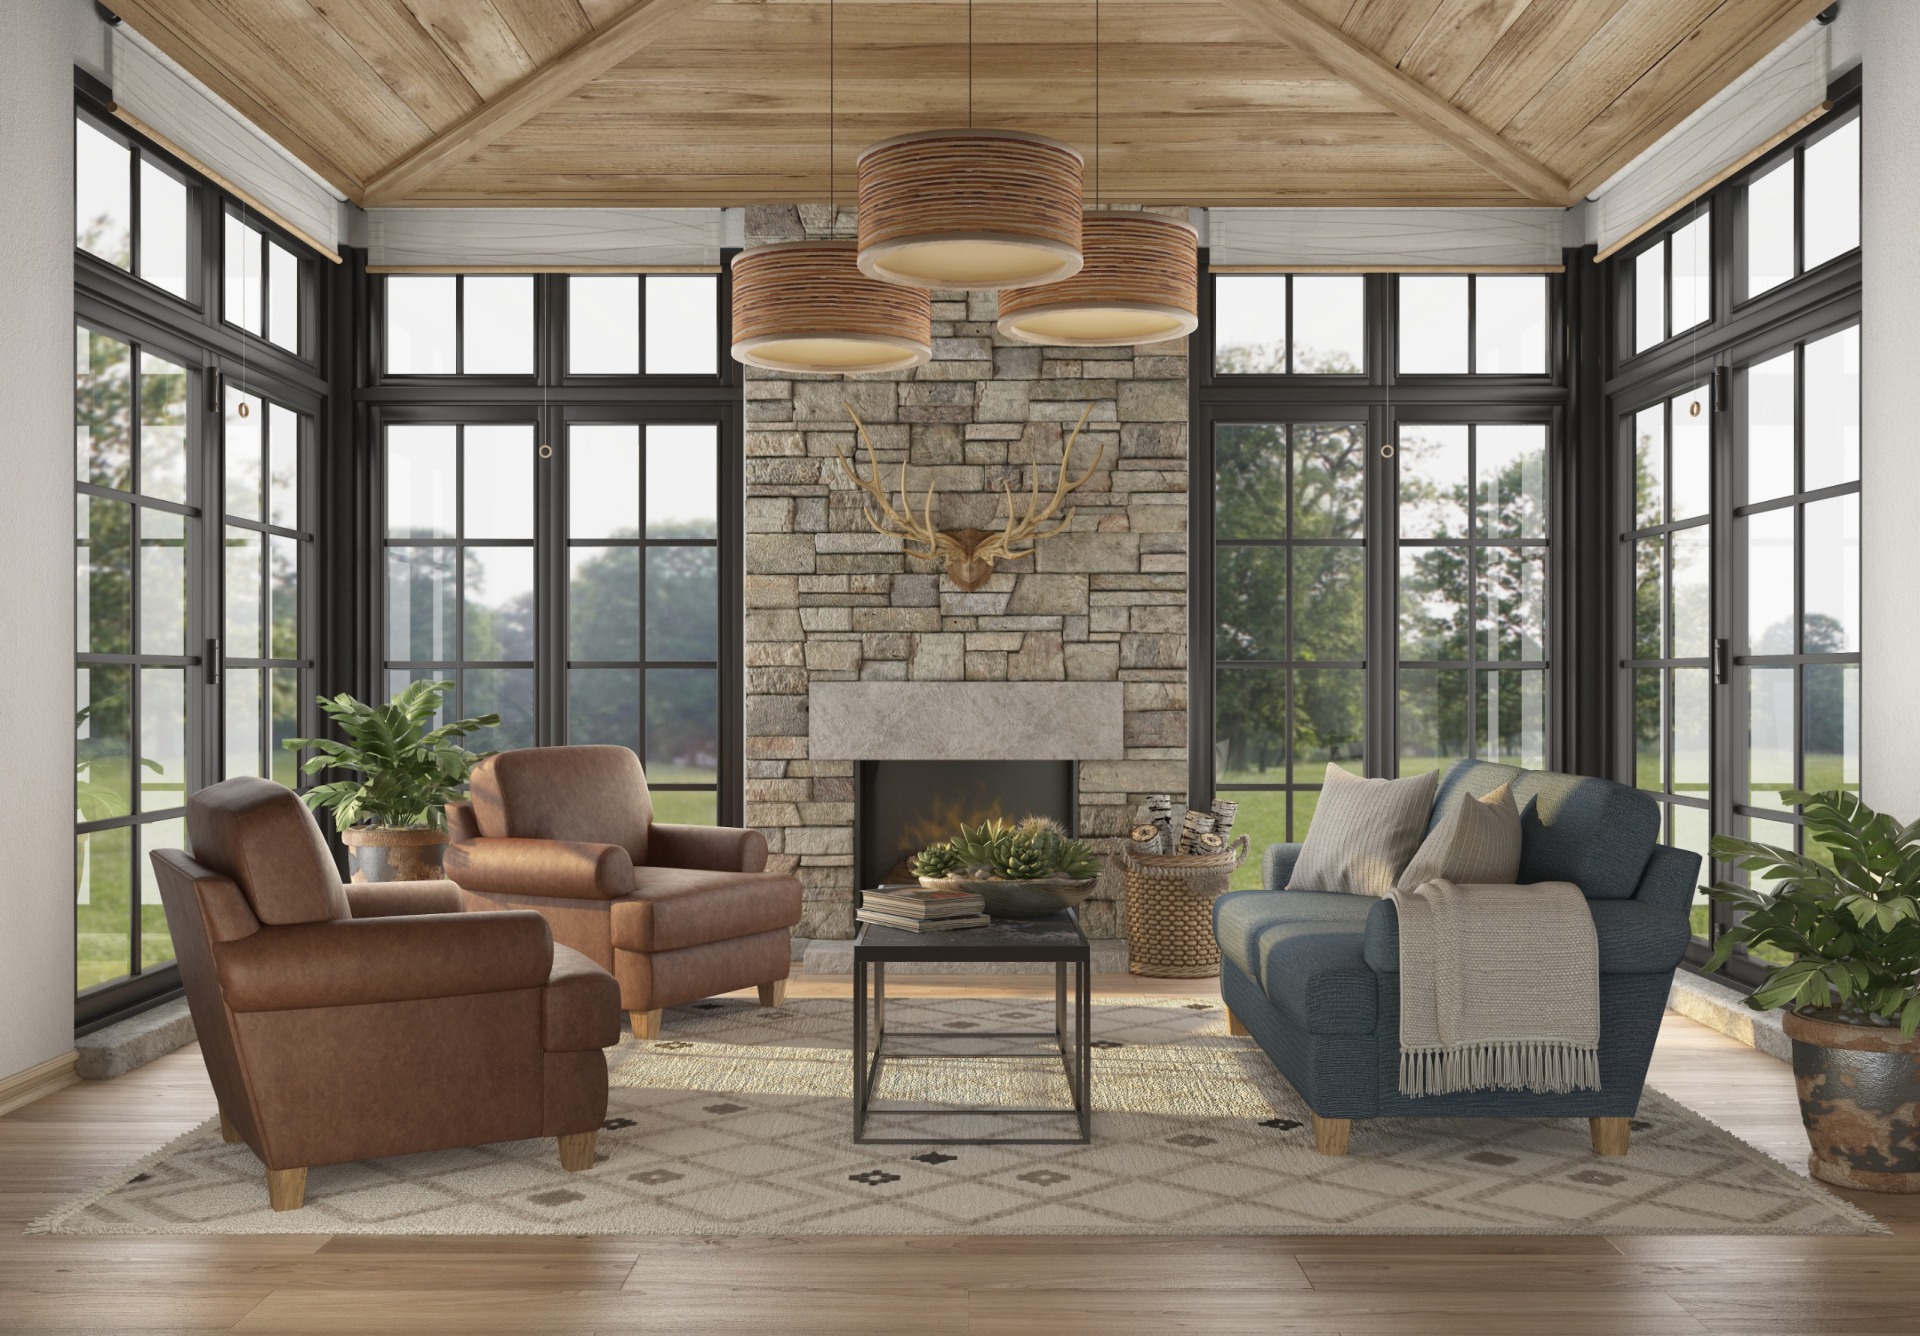 Livingston Montana interior design living area